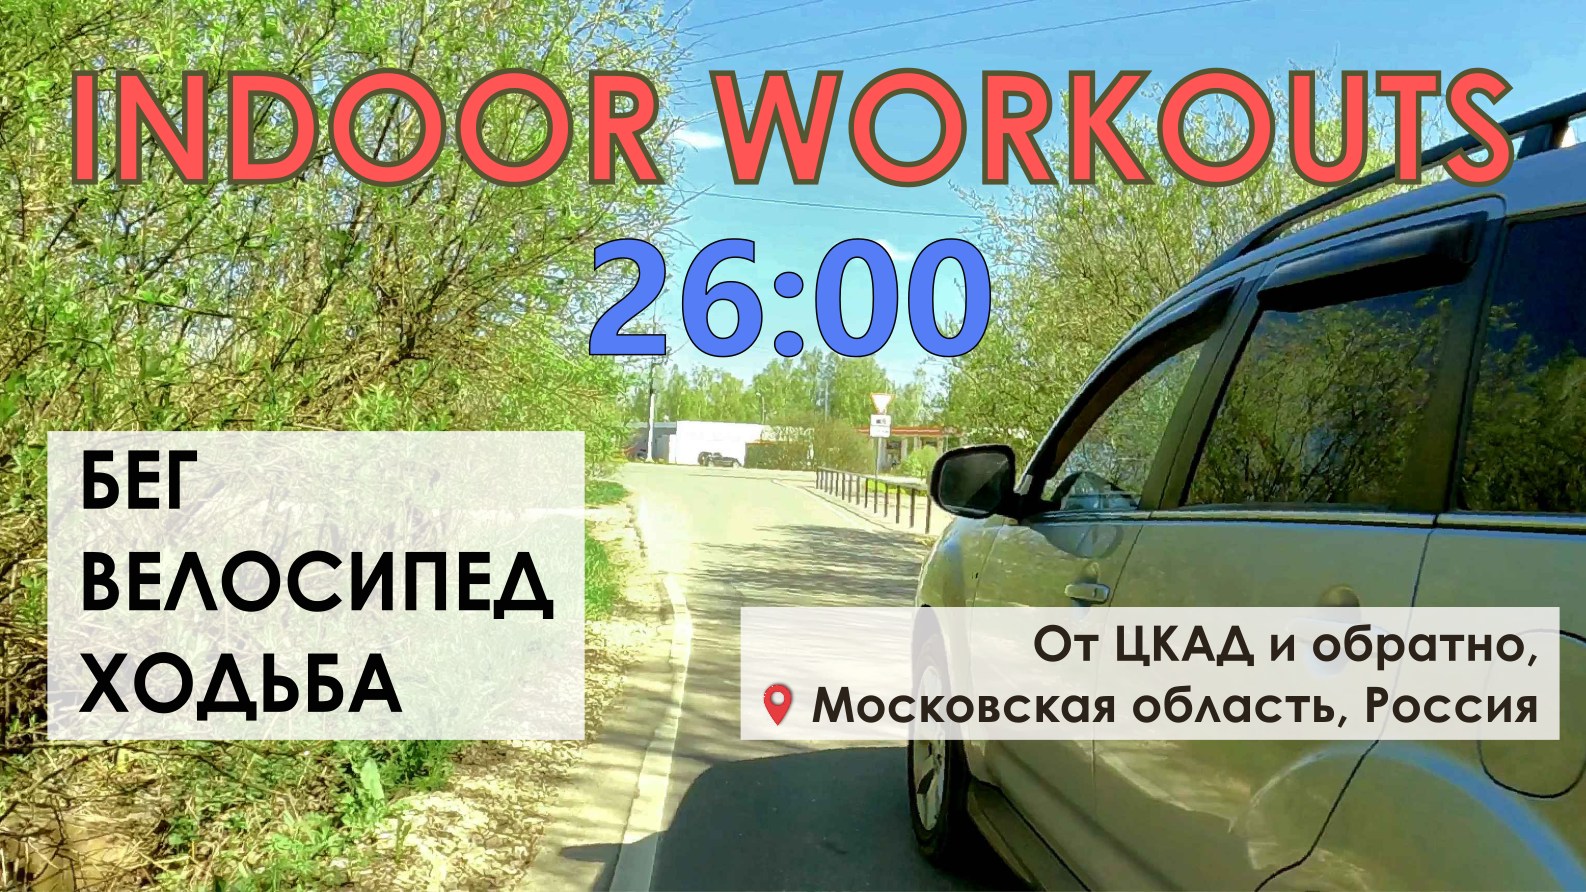 Московская область Россия Часть 2 | Видео для тренировки | Видео 25